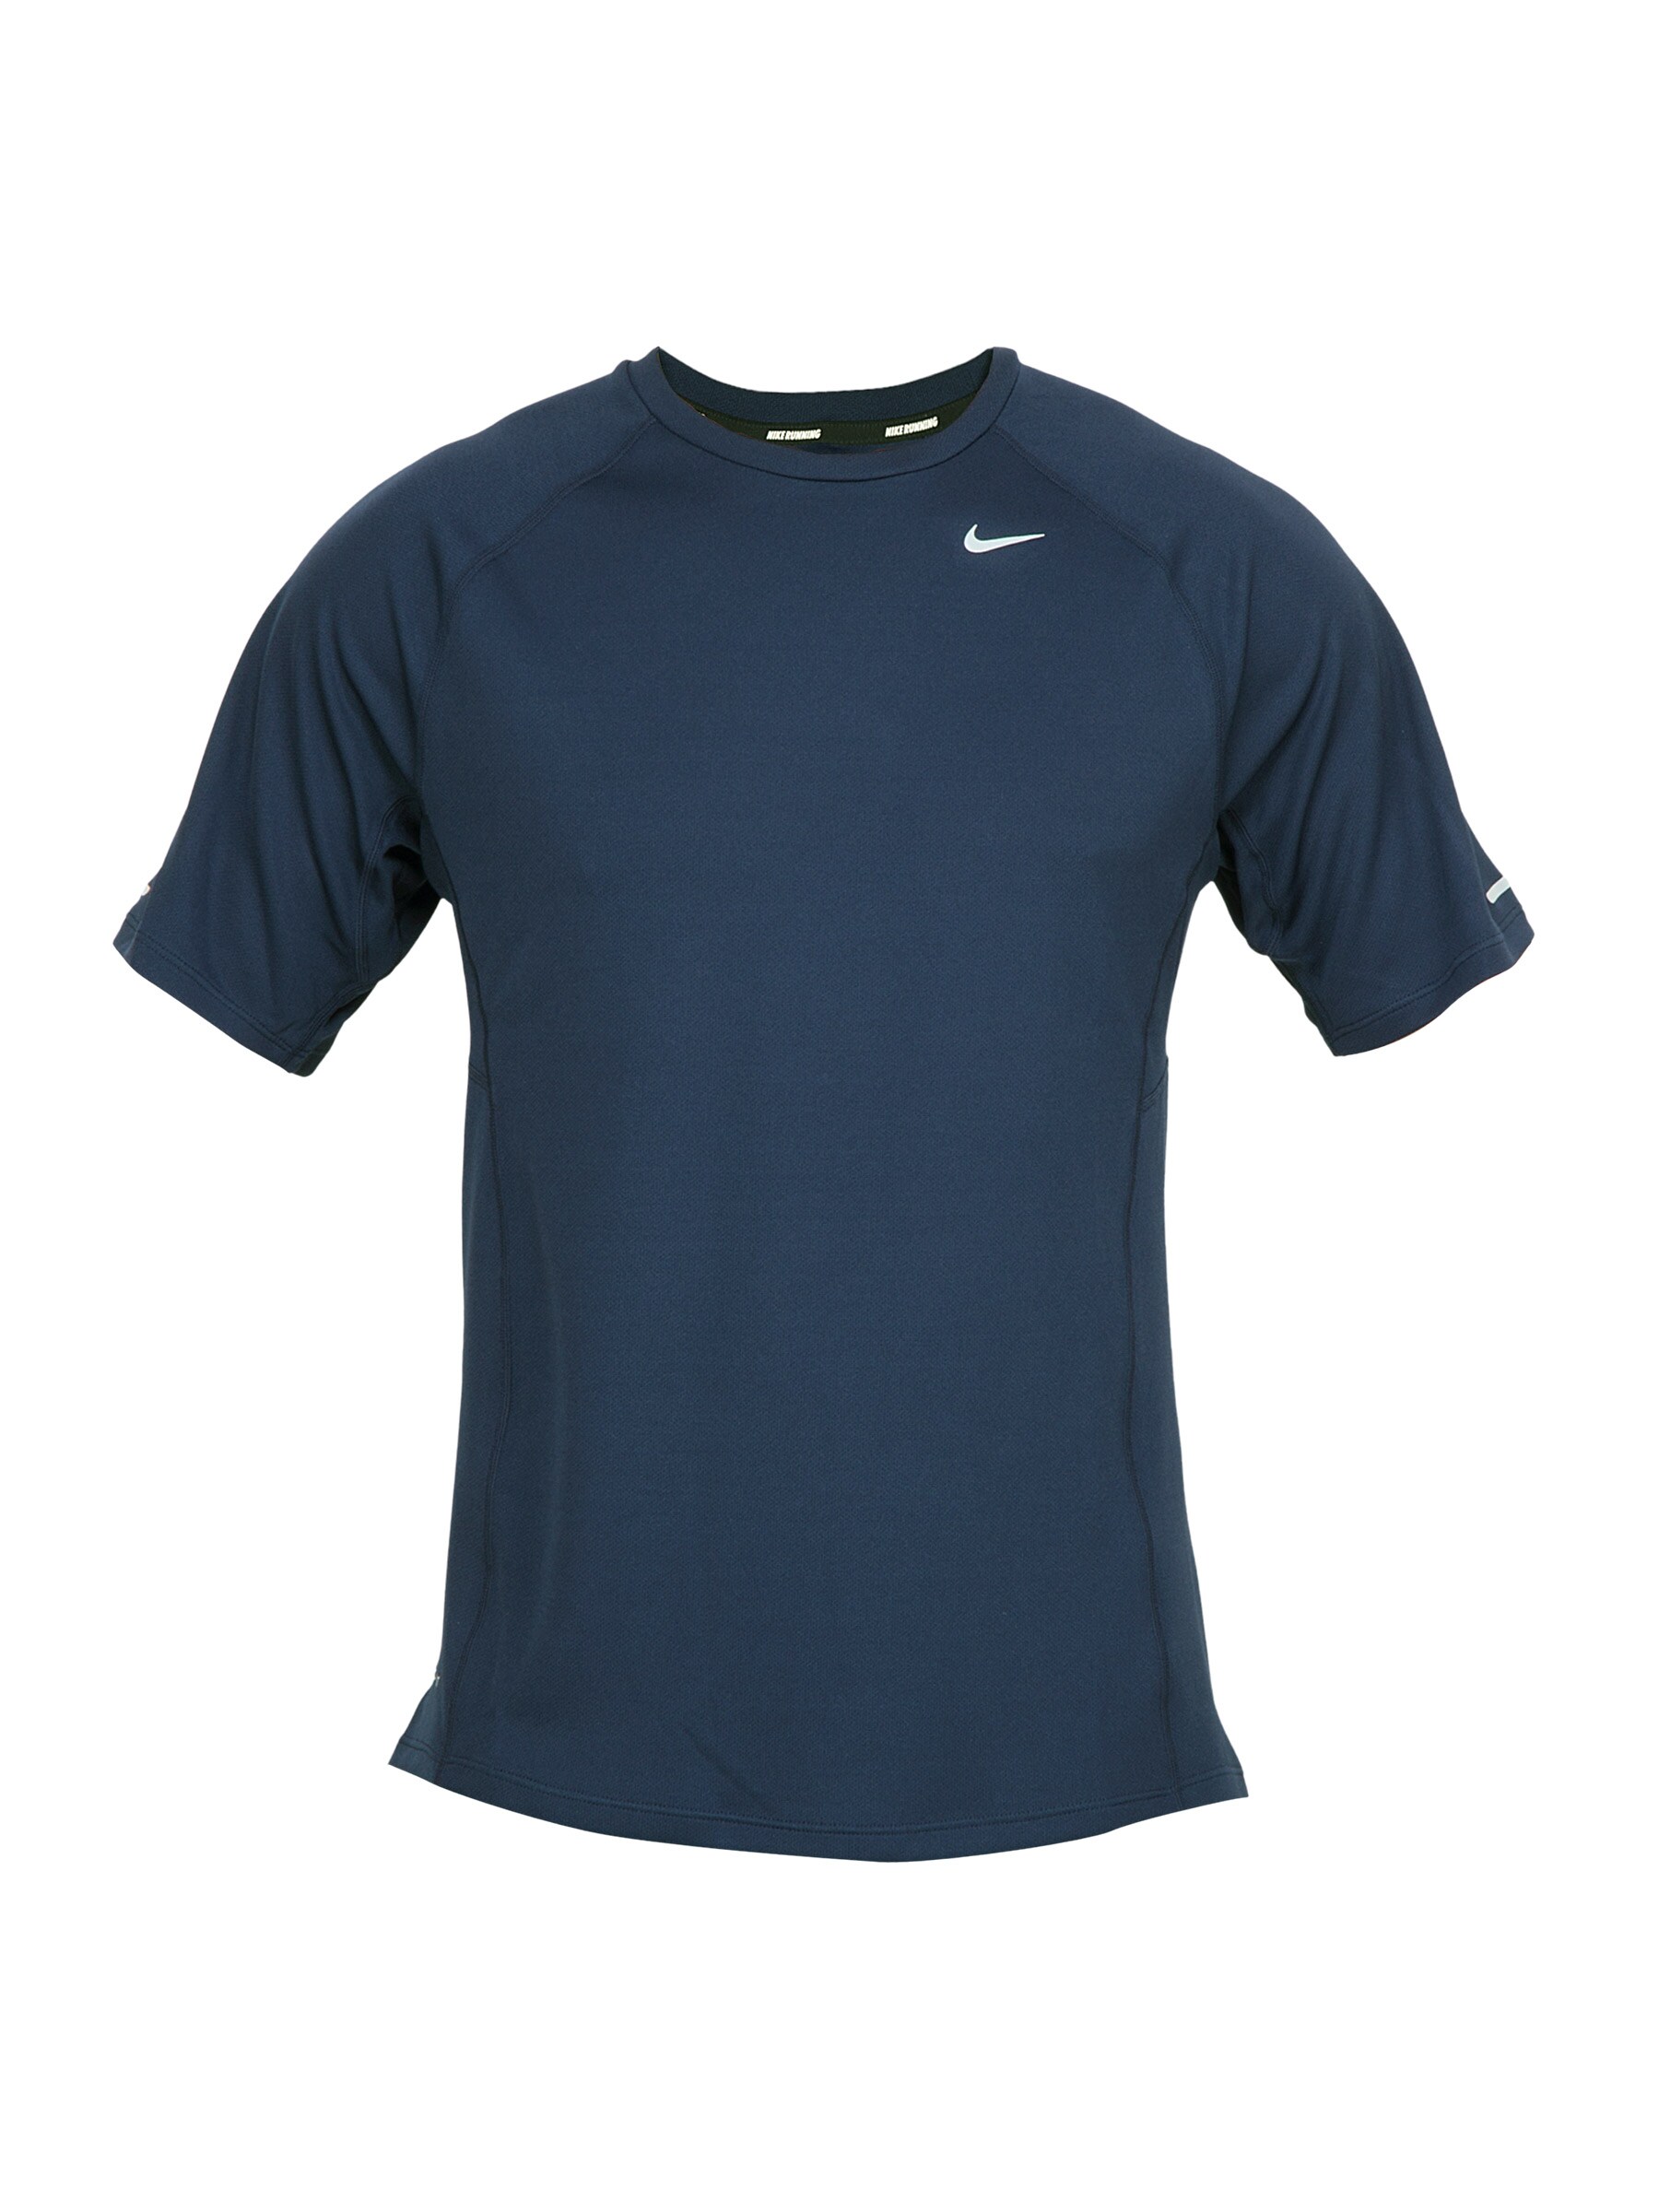 Nike Men Black T-shirt